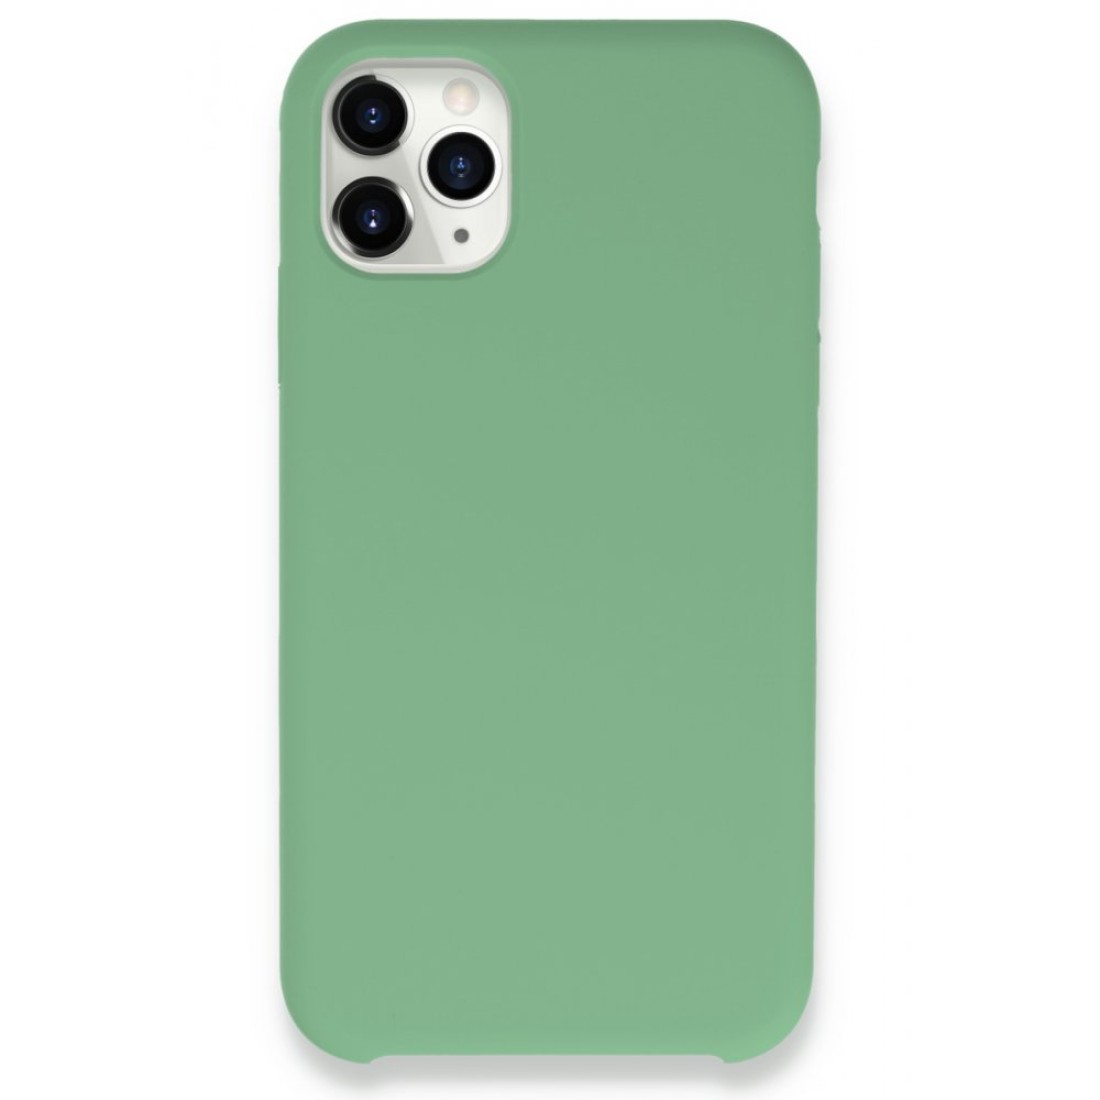 Apple iPhone 11 Pro Kılıf Lansman Legant Silikon - Yeşil